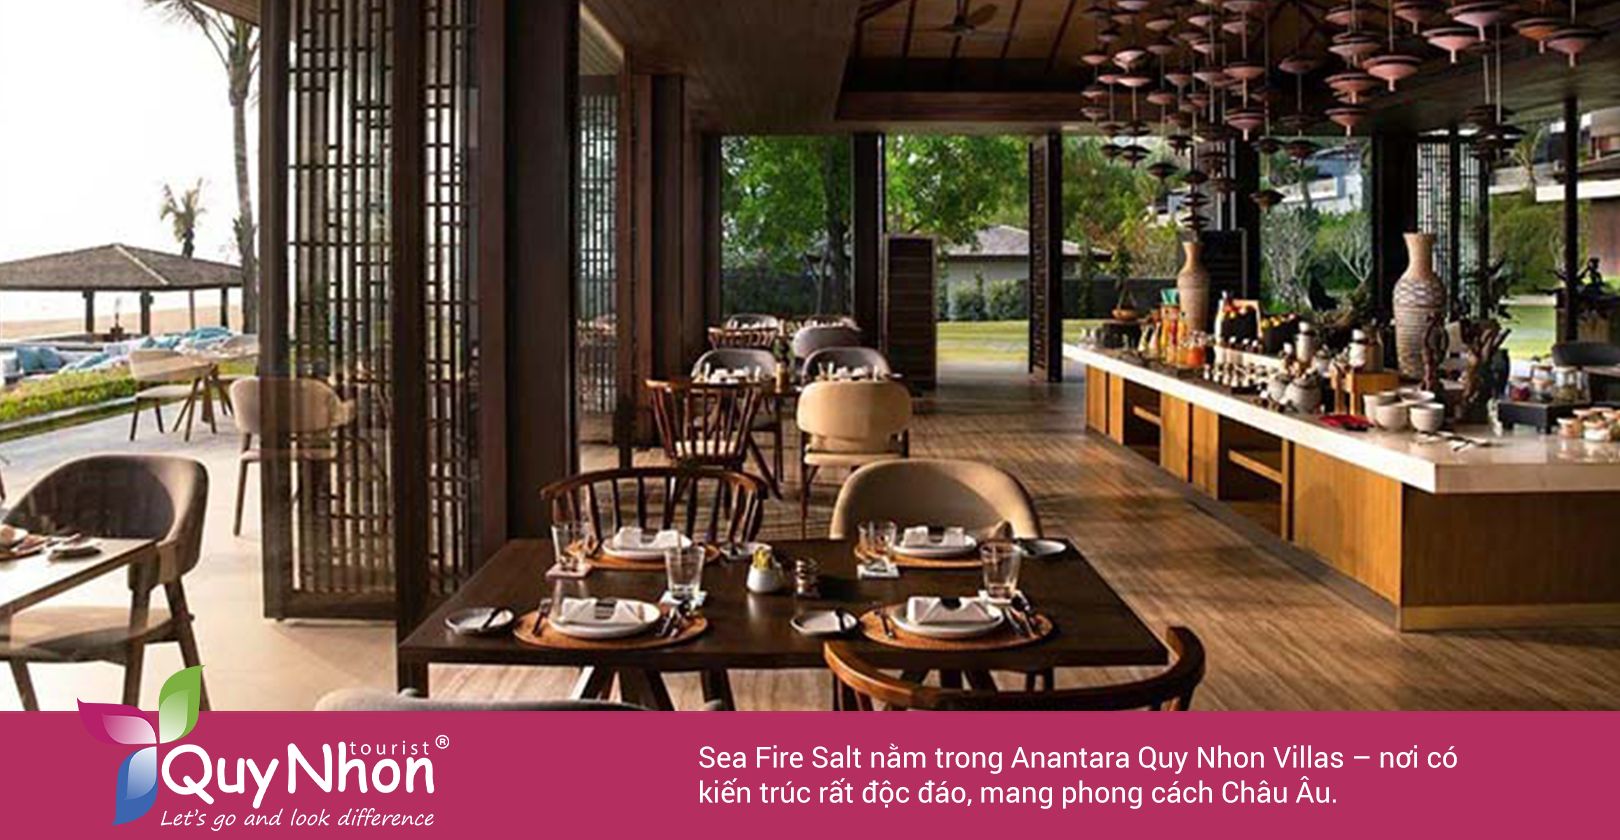 Sea Fire Salt là điểm đến tiếp theo trong TOP 7 nhà hàng Quy Nhơn view đẹp.